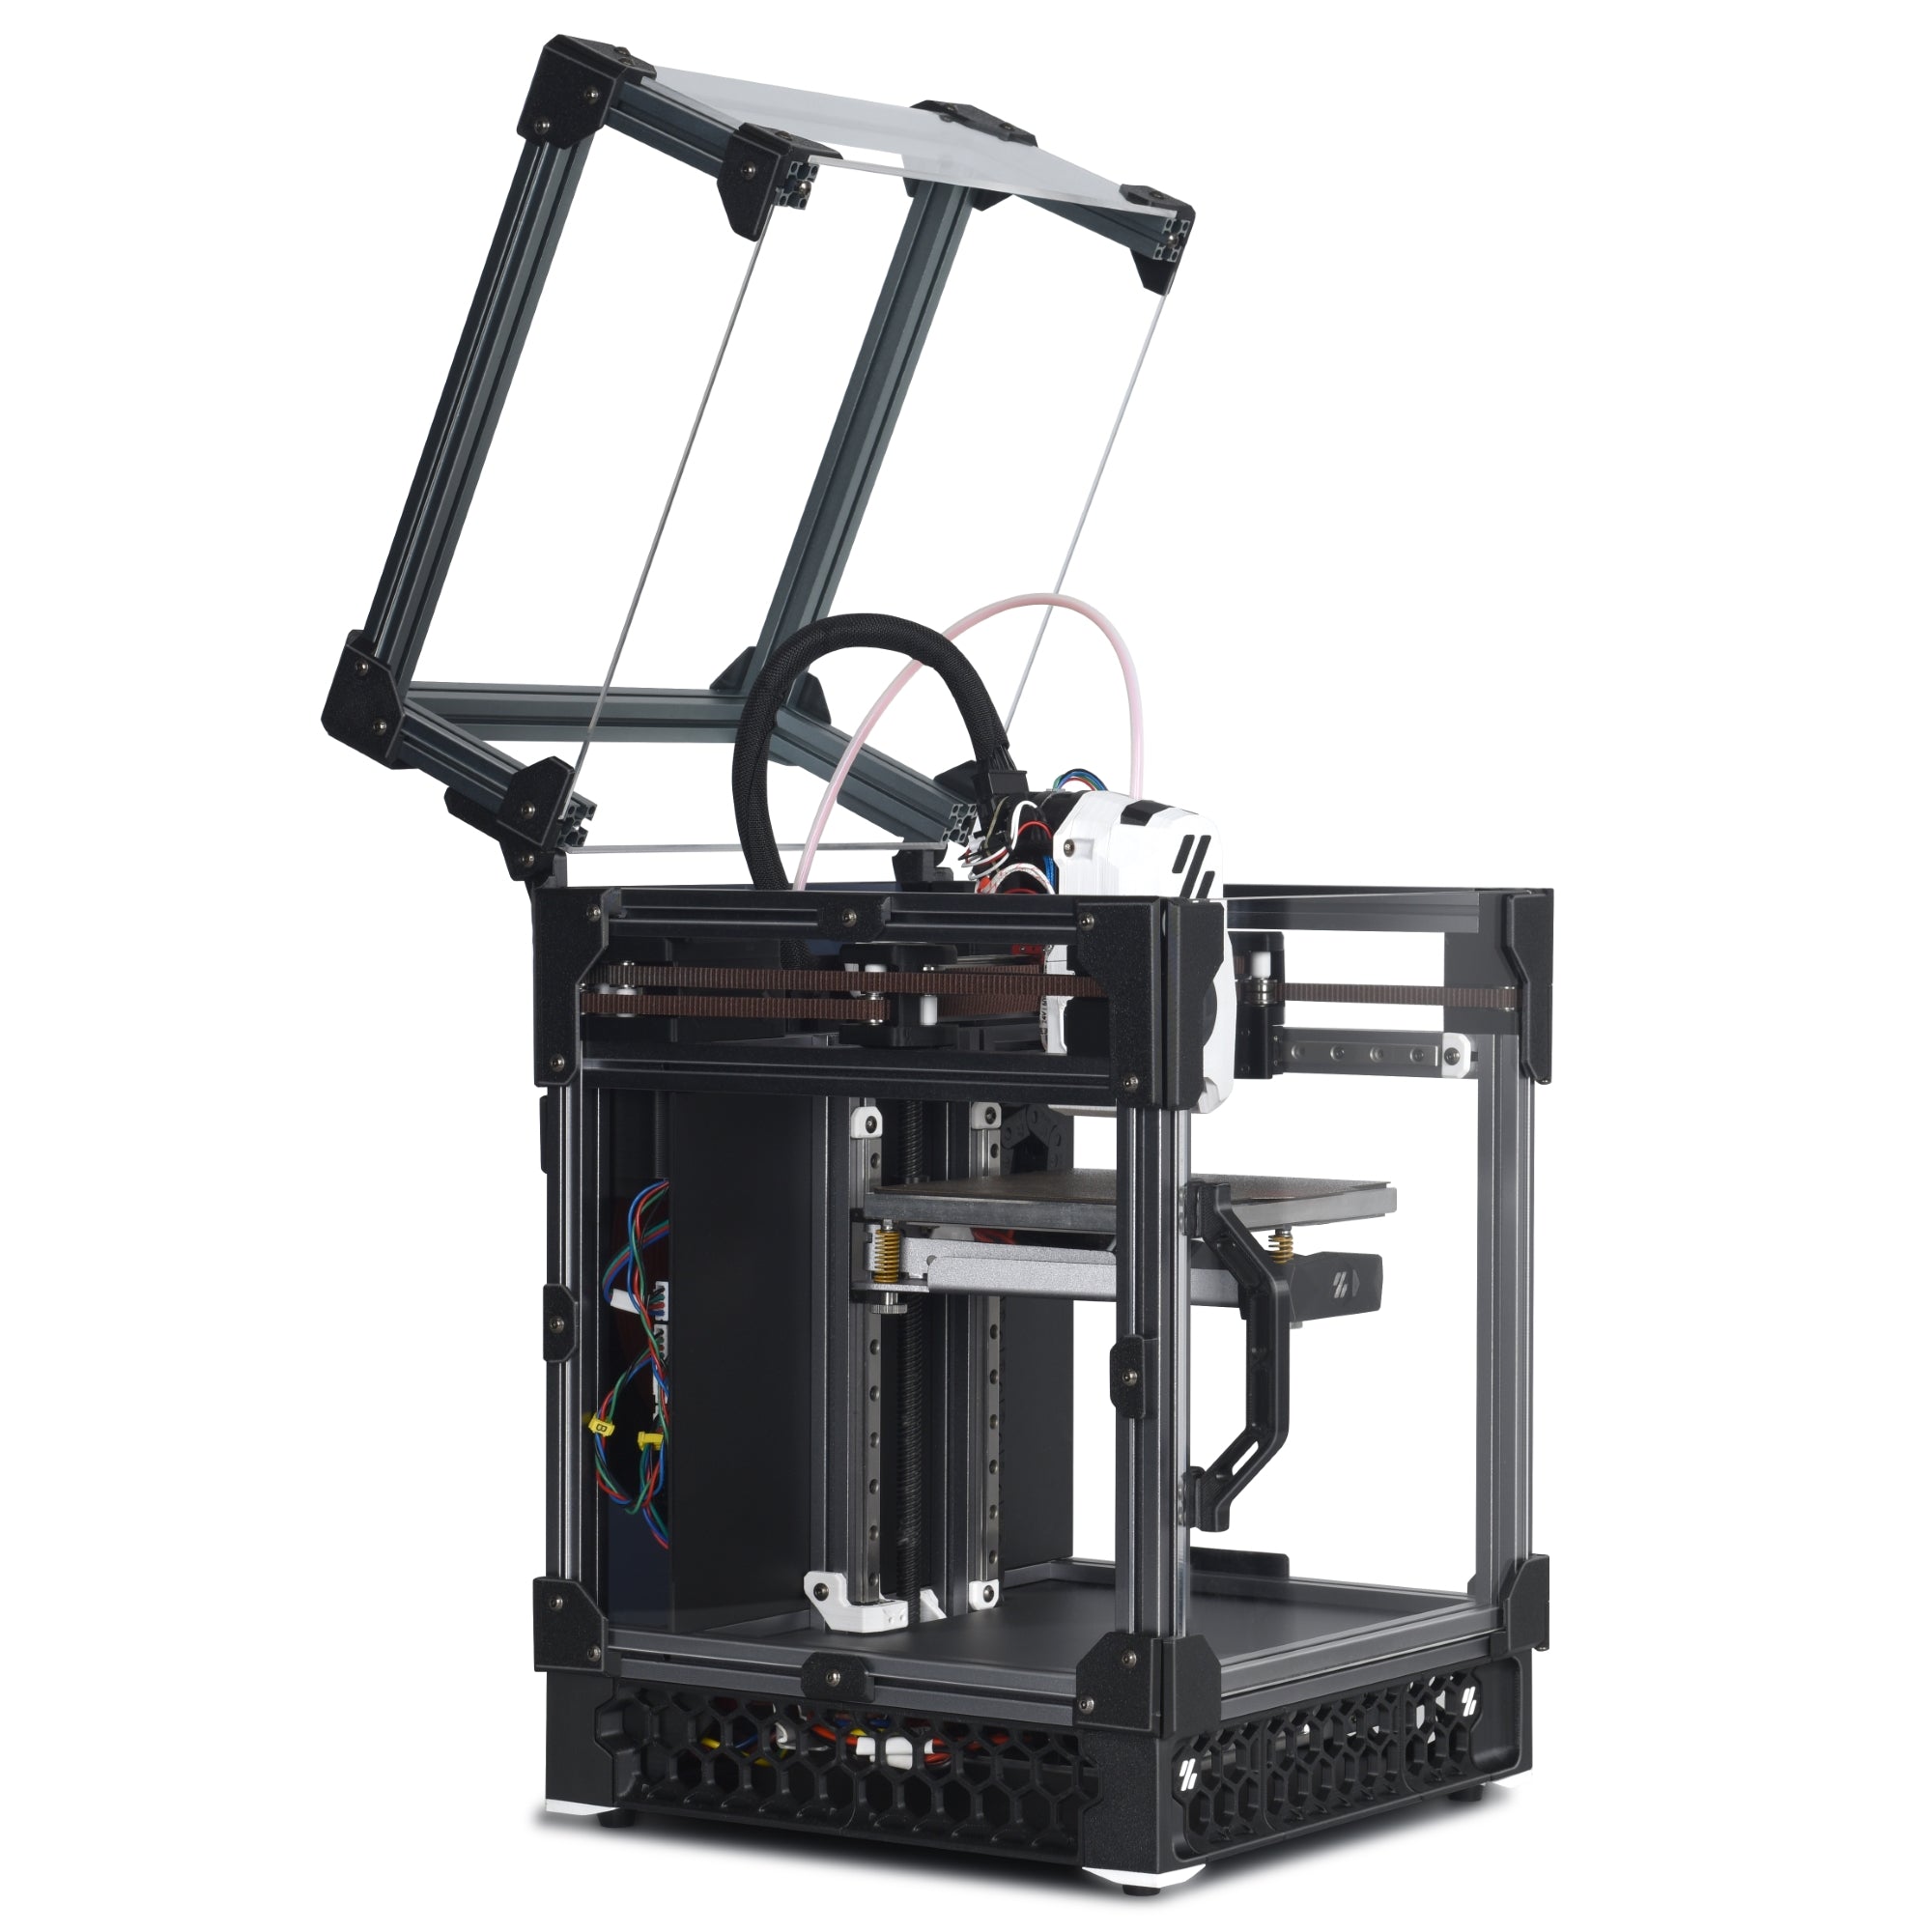 Voron V0.2-S1 REV A+ 3D Printer Kit with E3D Revo by LDO (NO PI)